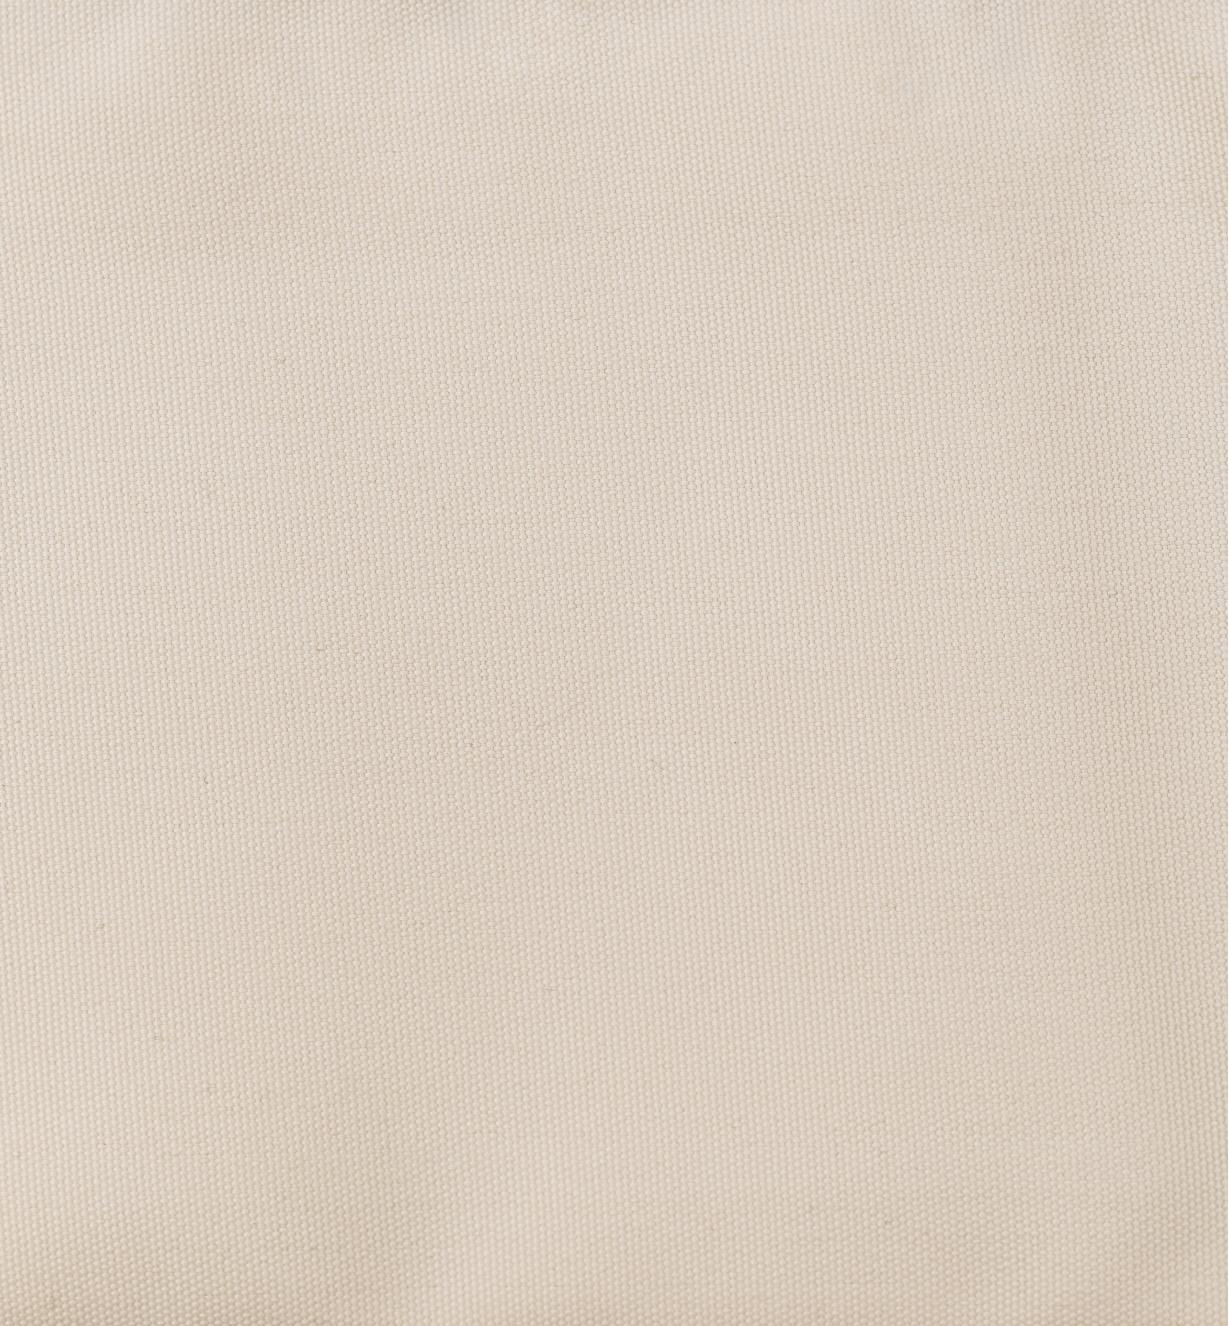 99W7812 - Rideau de 60 po x 84 po, blanc écru